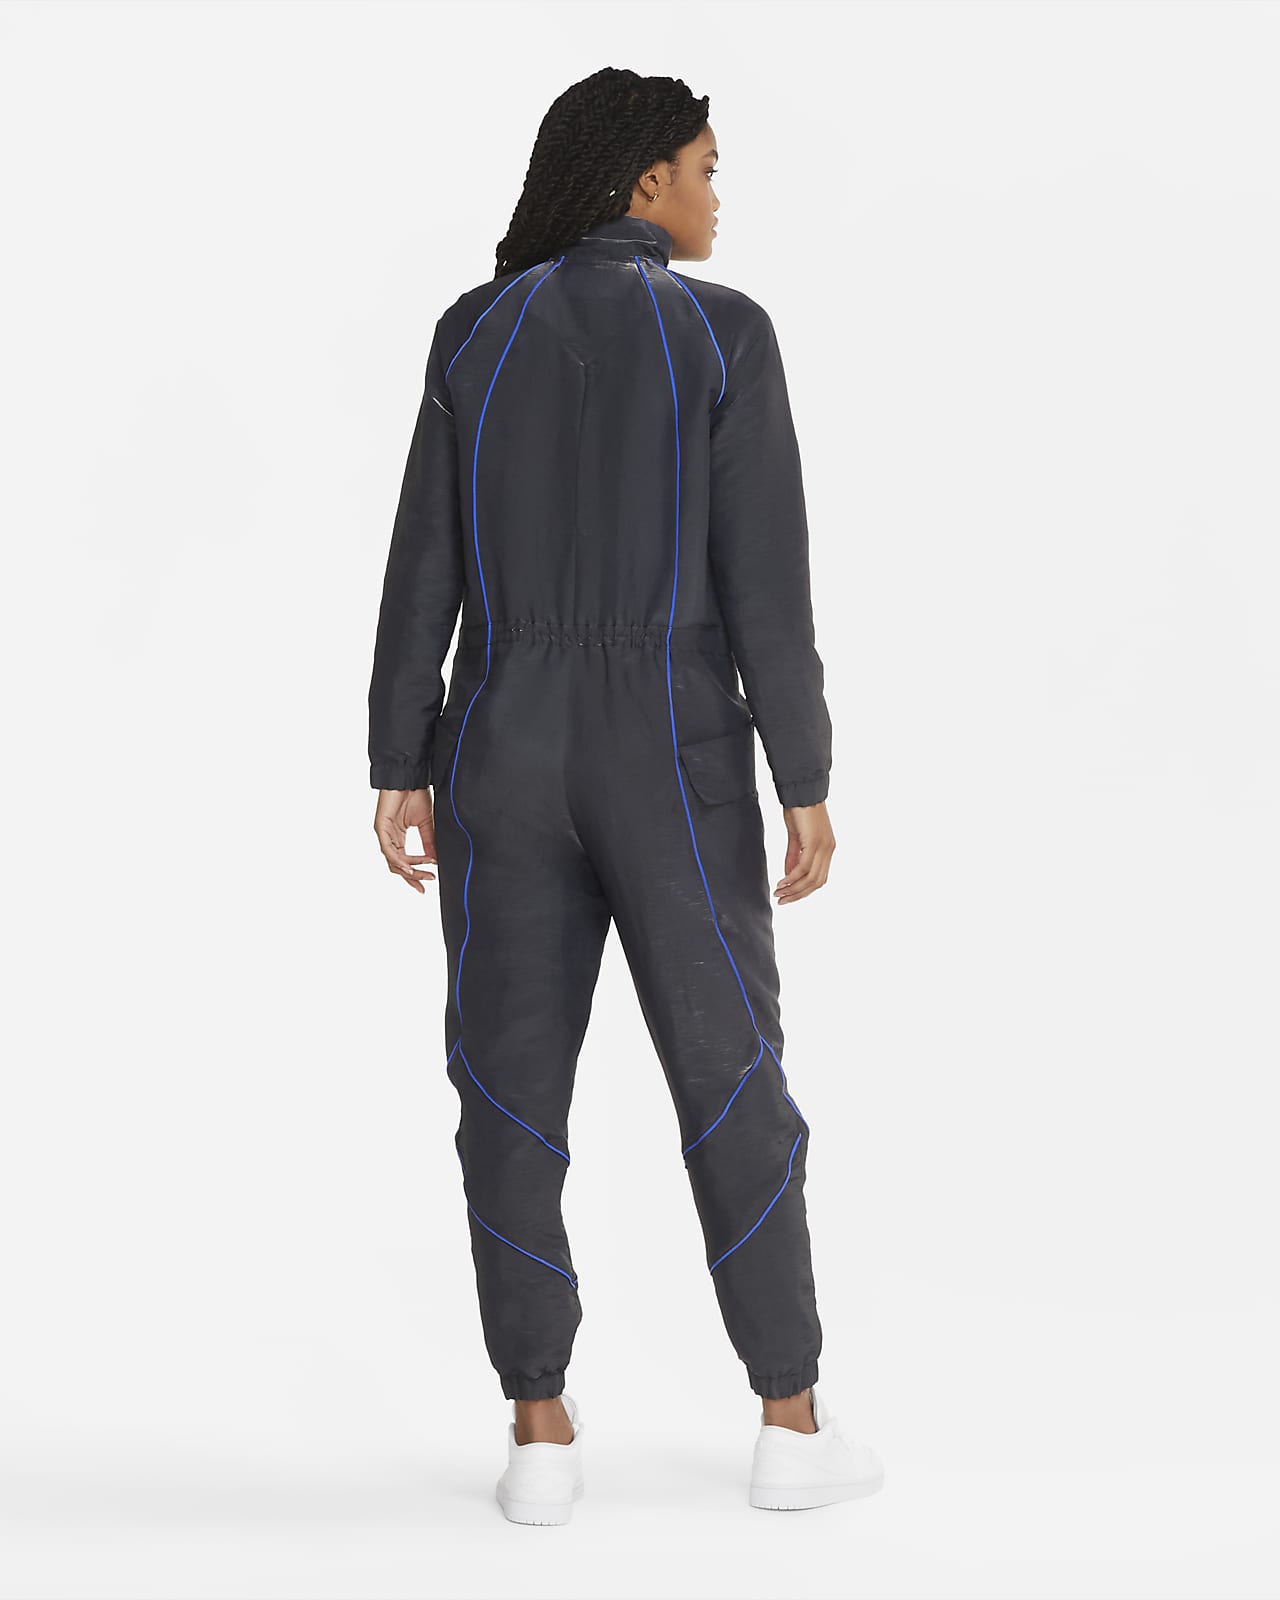 Jordan Women's Flight Suit. Nike GB